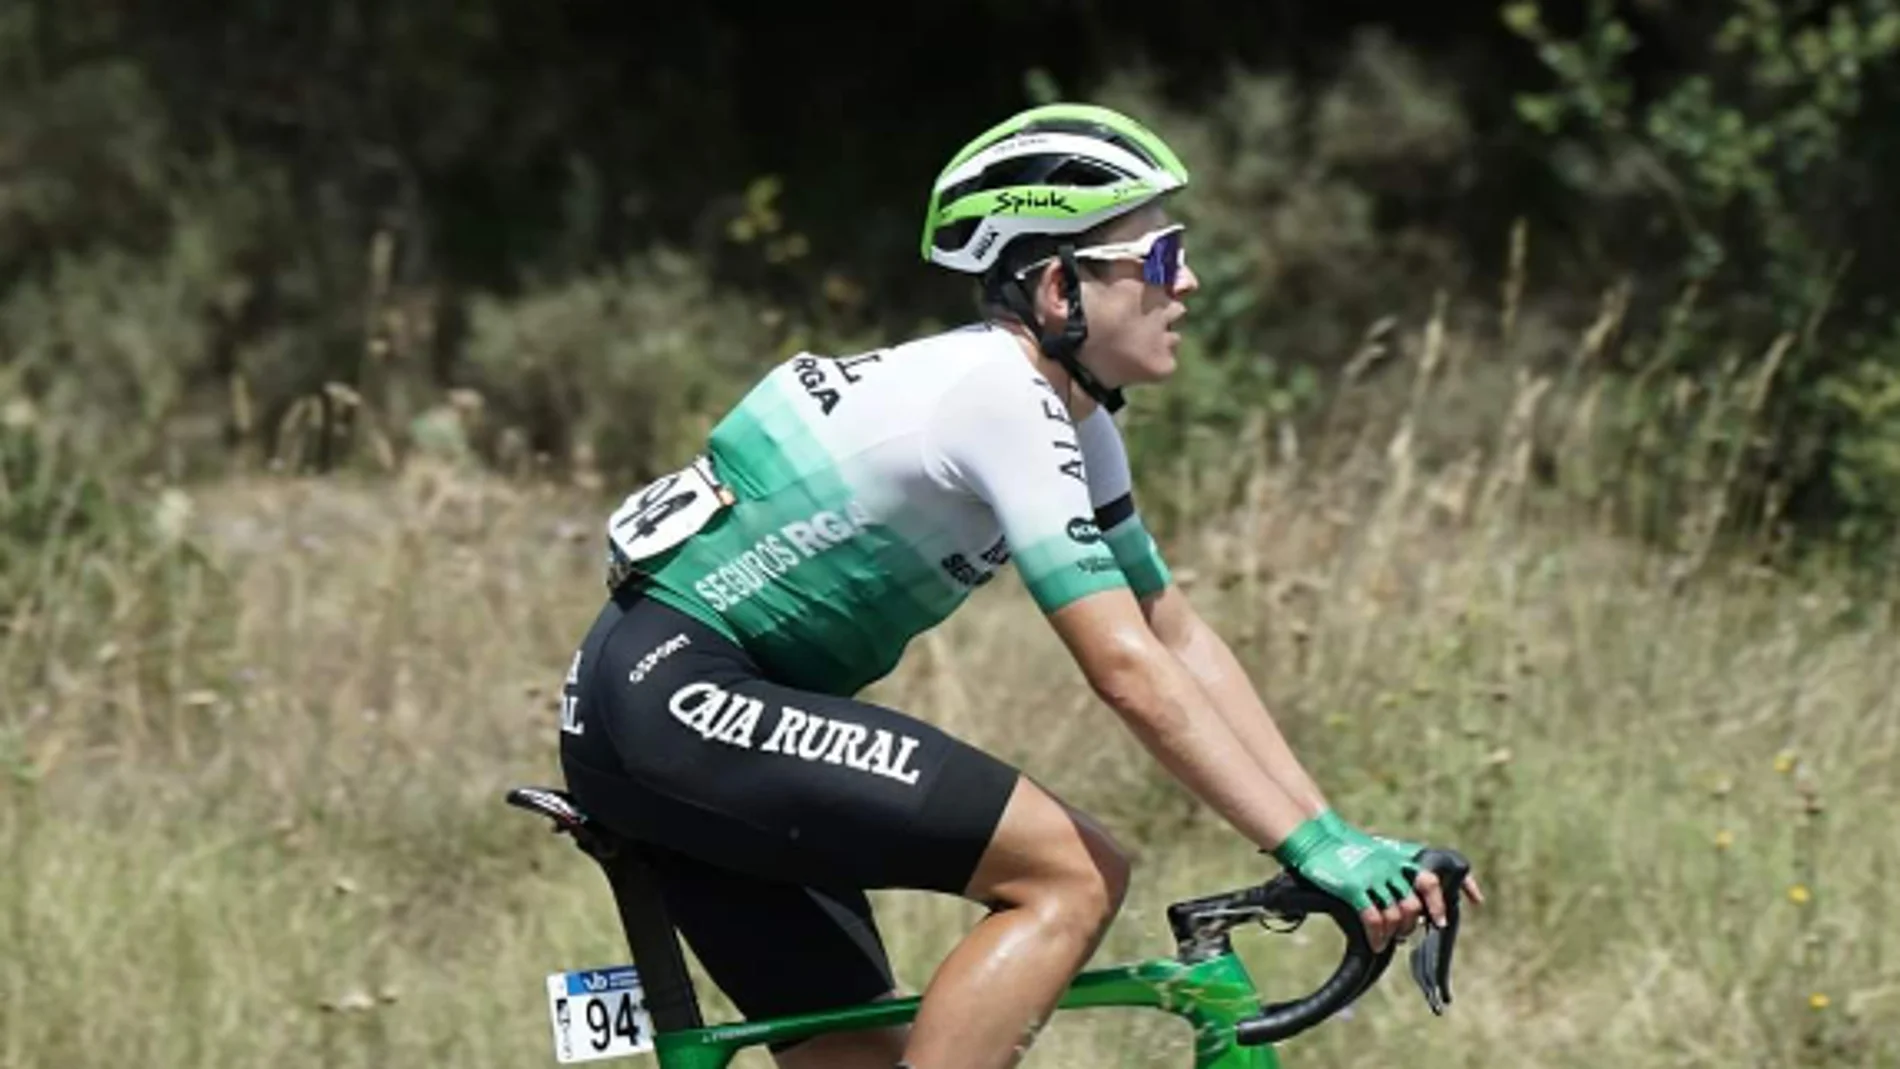 El ciclista Josu Etxeberria en una imagen subida por su equipo a redes sociales